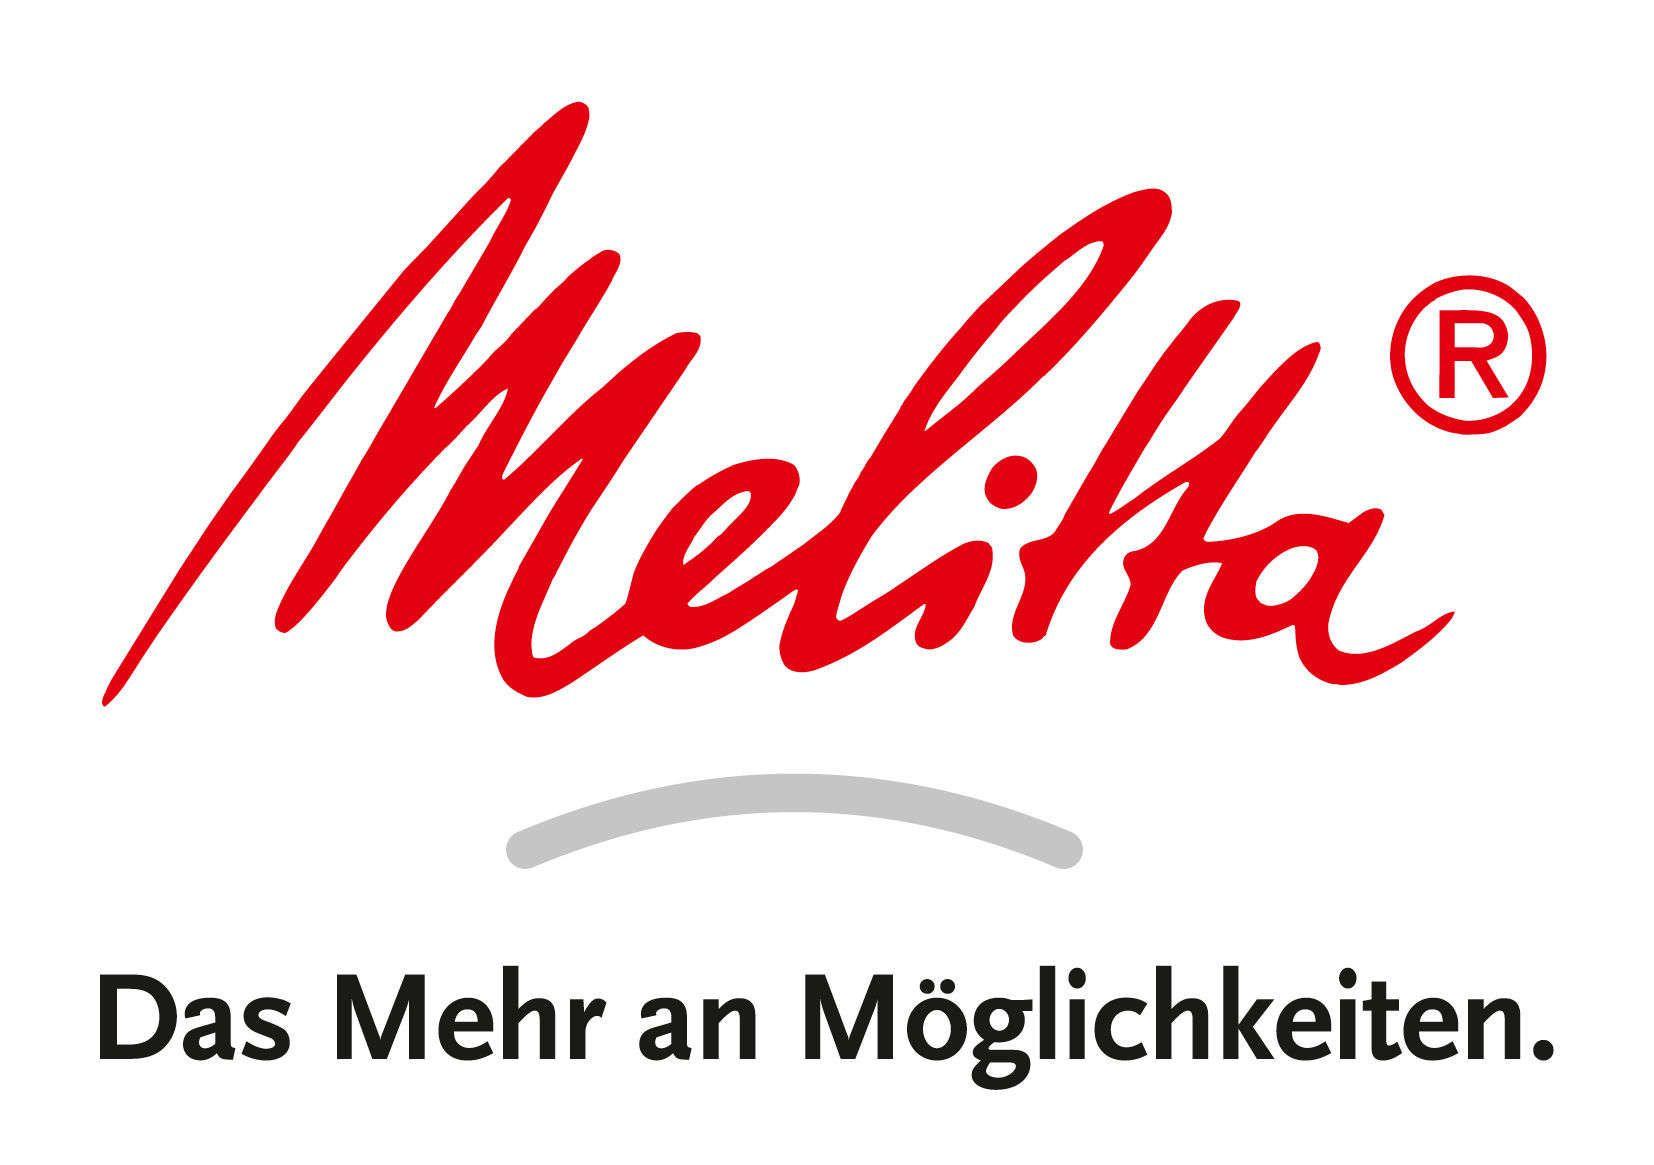 Melitta Logo - Deine Ausbildung bei Melitta in Minden - Karriere Papier Verpackung ...